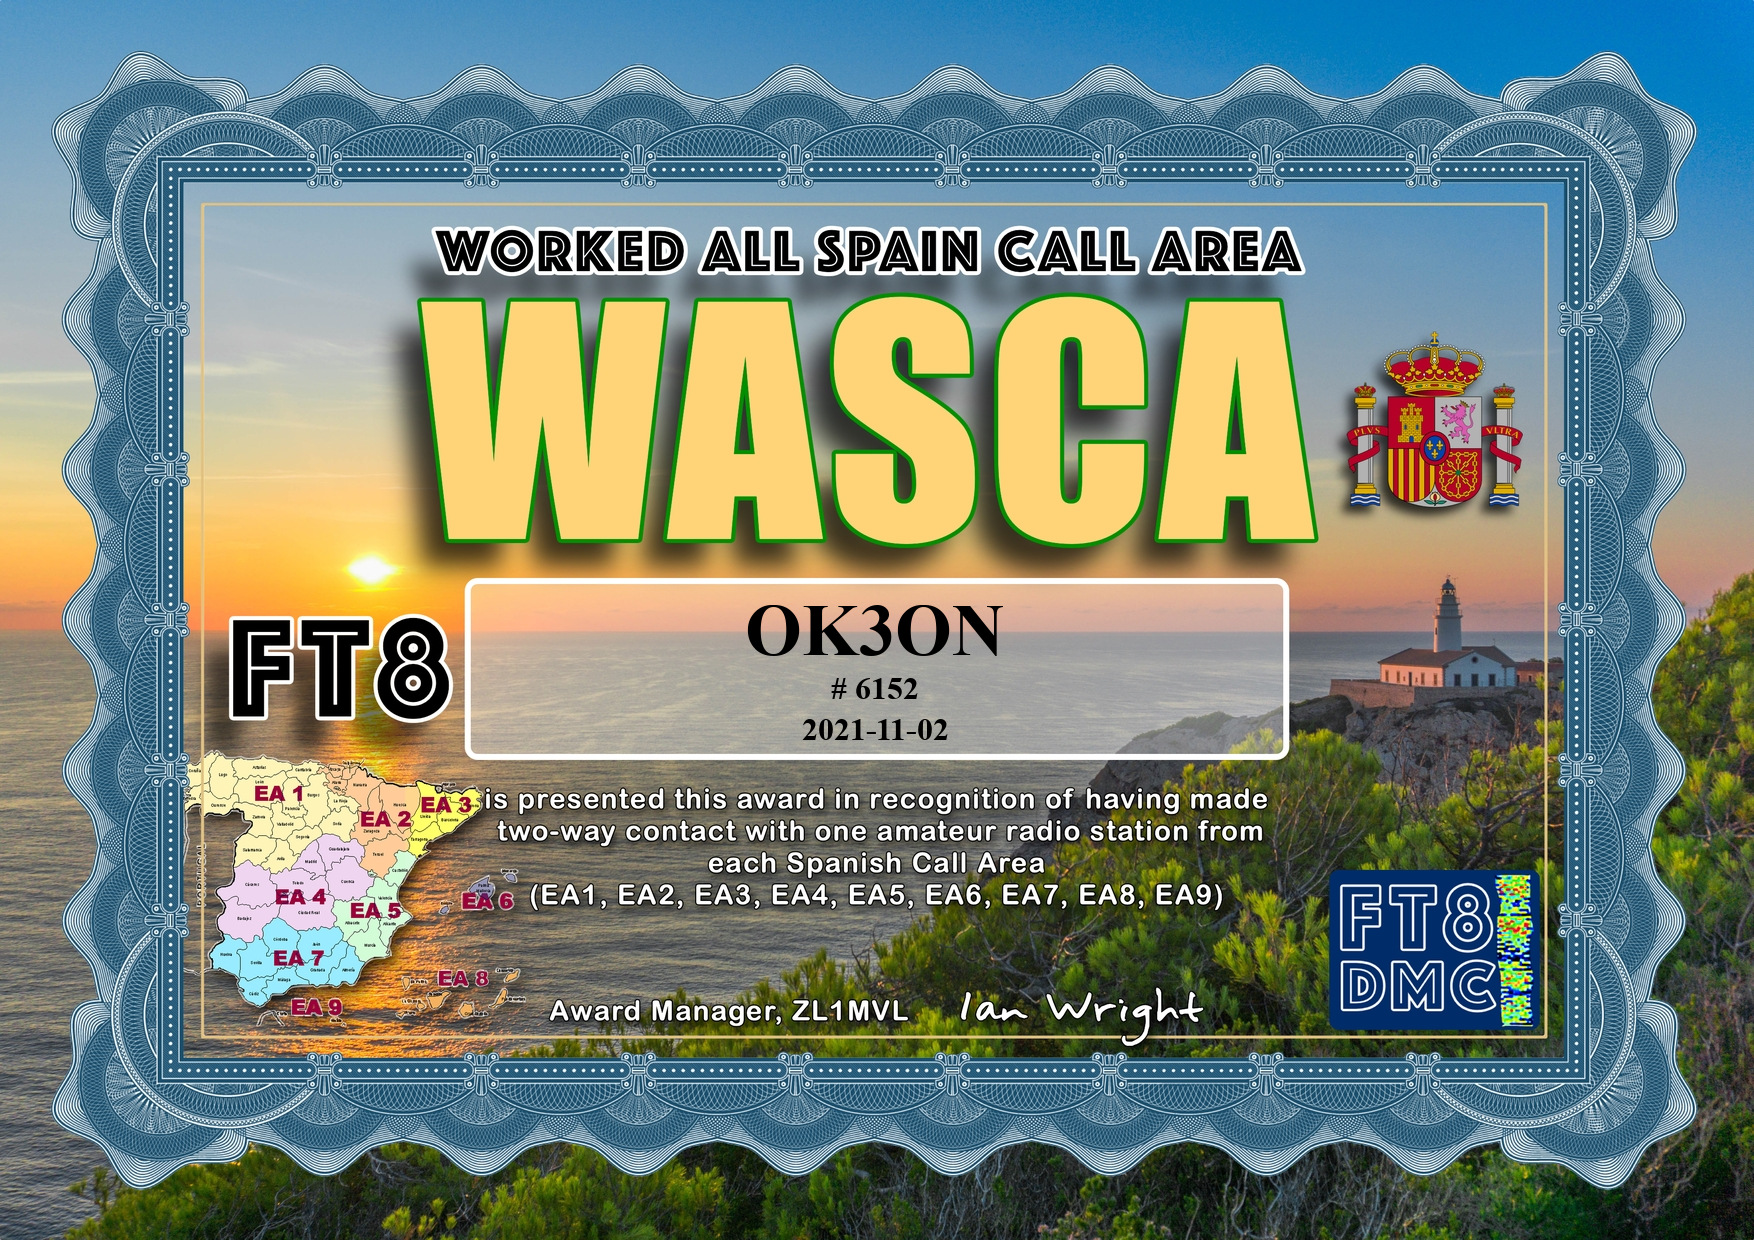 awards/OK3ON-WASCA-WASCA_FT8DMC.jpg